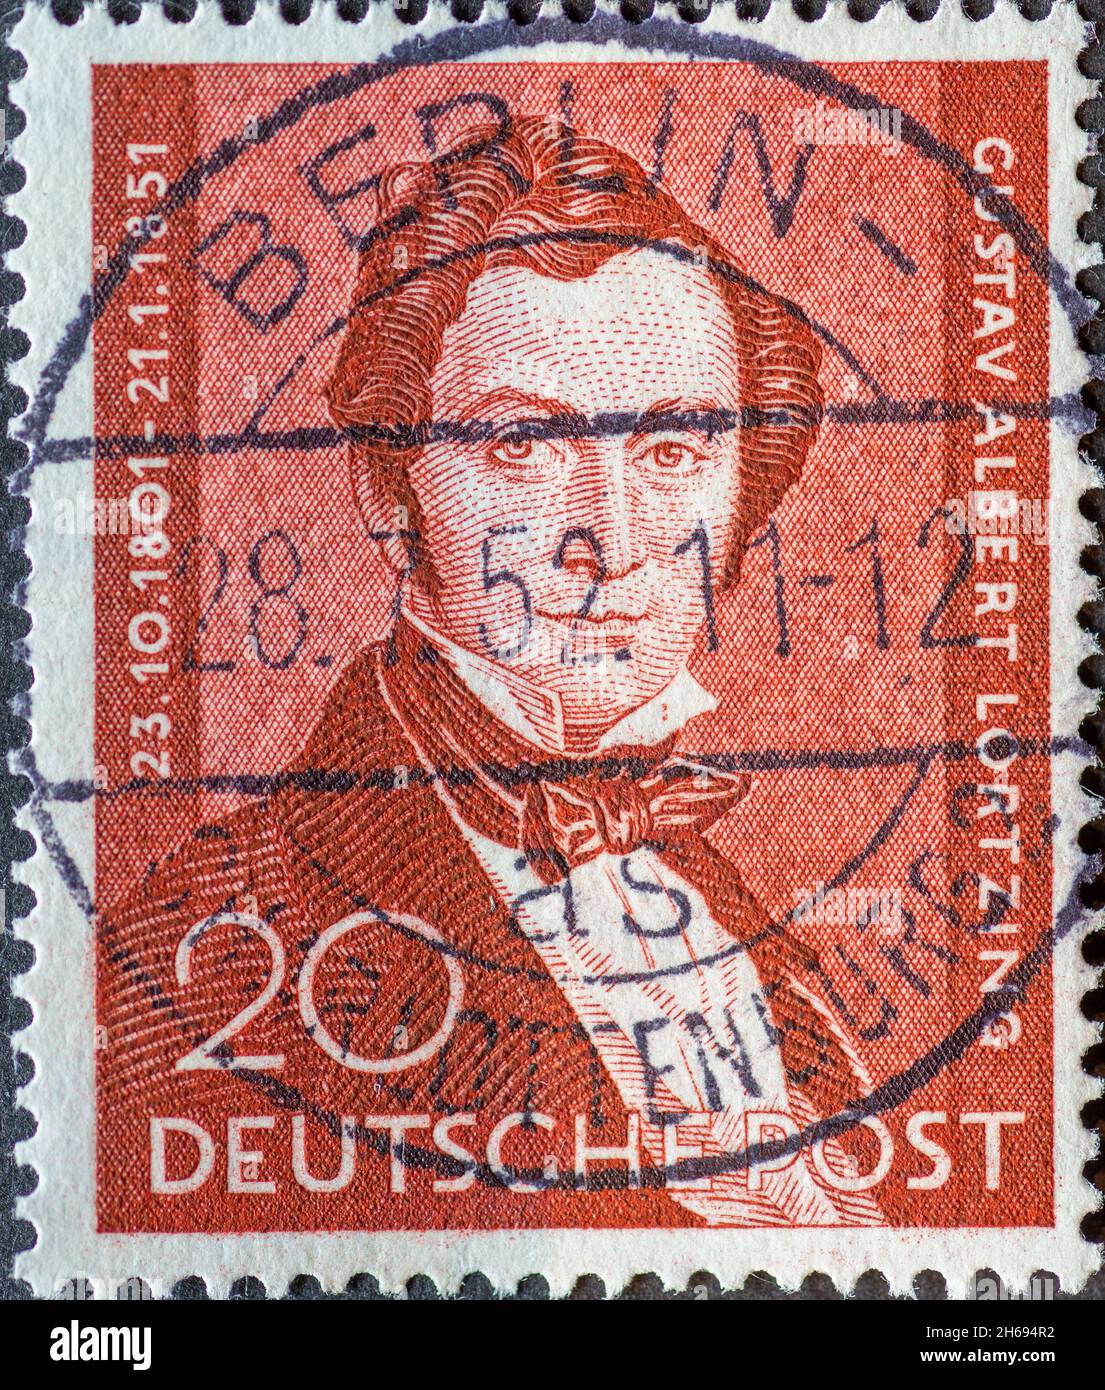 ALLEMAGNE, Berlin - VERS 1949: Timbre-poste d'Allemagne, Berlin de couleur marron montrant un portrait de Gustav Albert Lortzing.100e anniversaire de d Banque D'Images